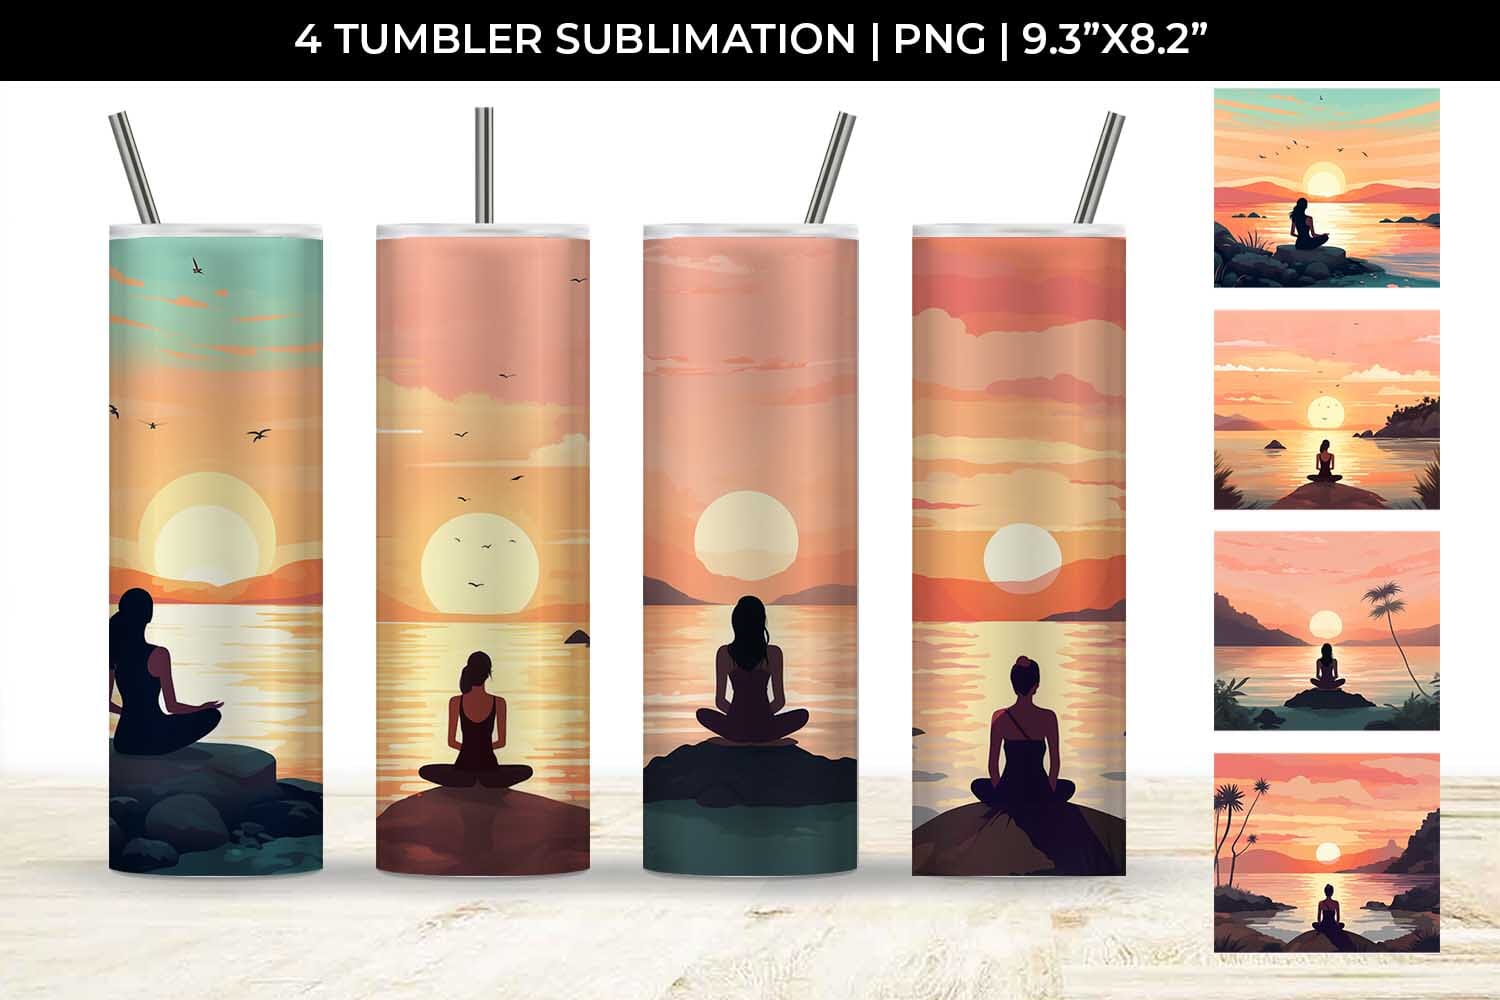 Tranquil Aura - Mindful Yoga Mug Wrap Sublimation Bundle - So Fontsy